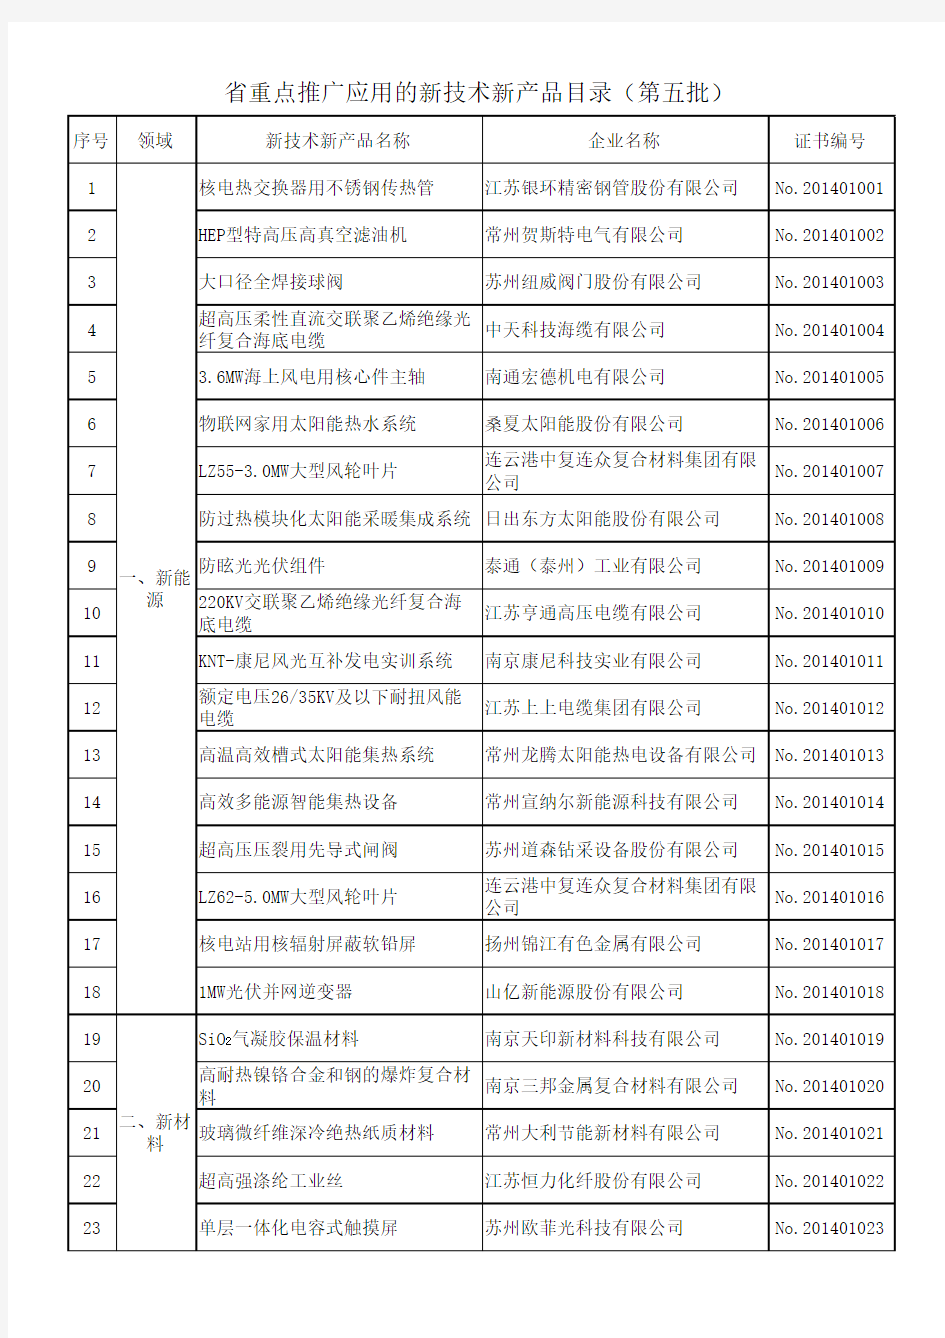 江苏省重点推广应用的新技术新产品目录(第五批)